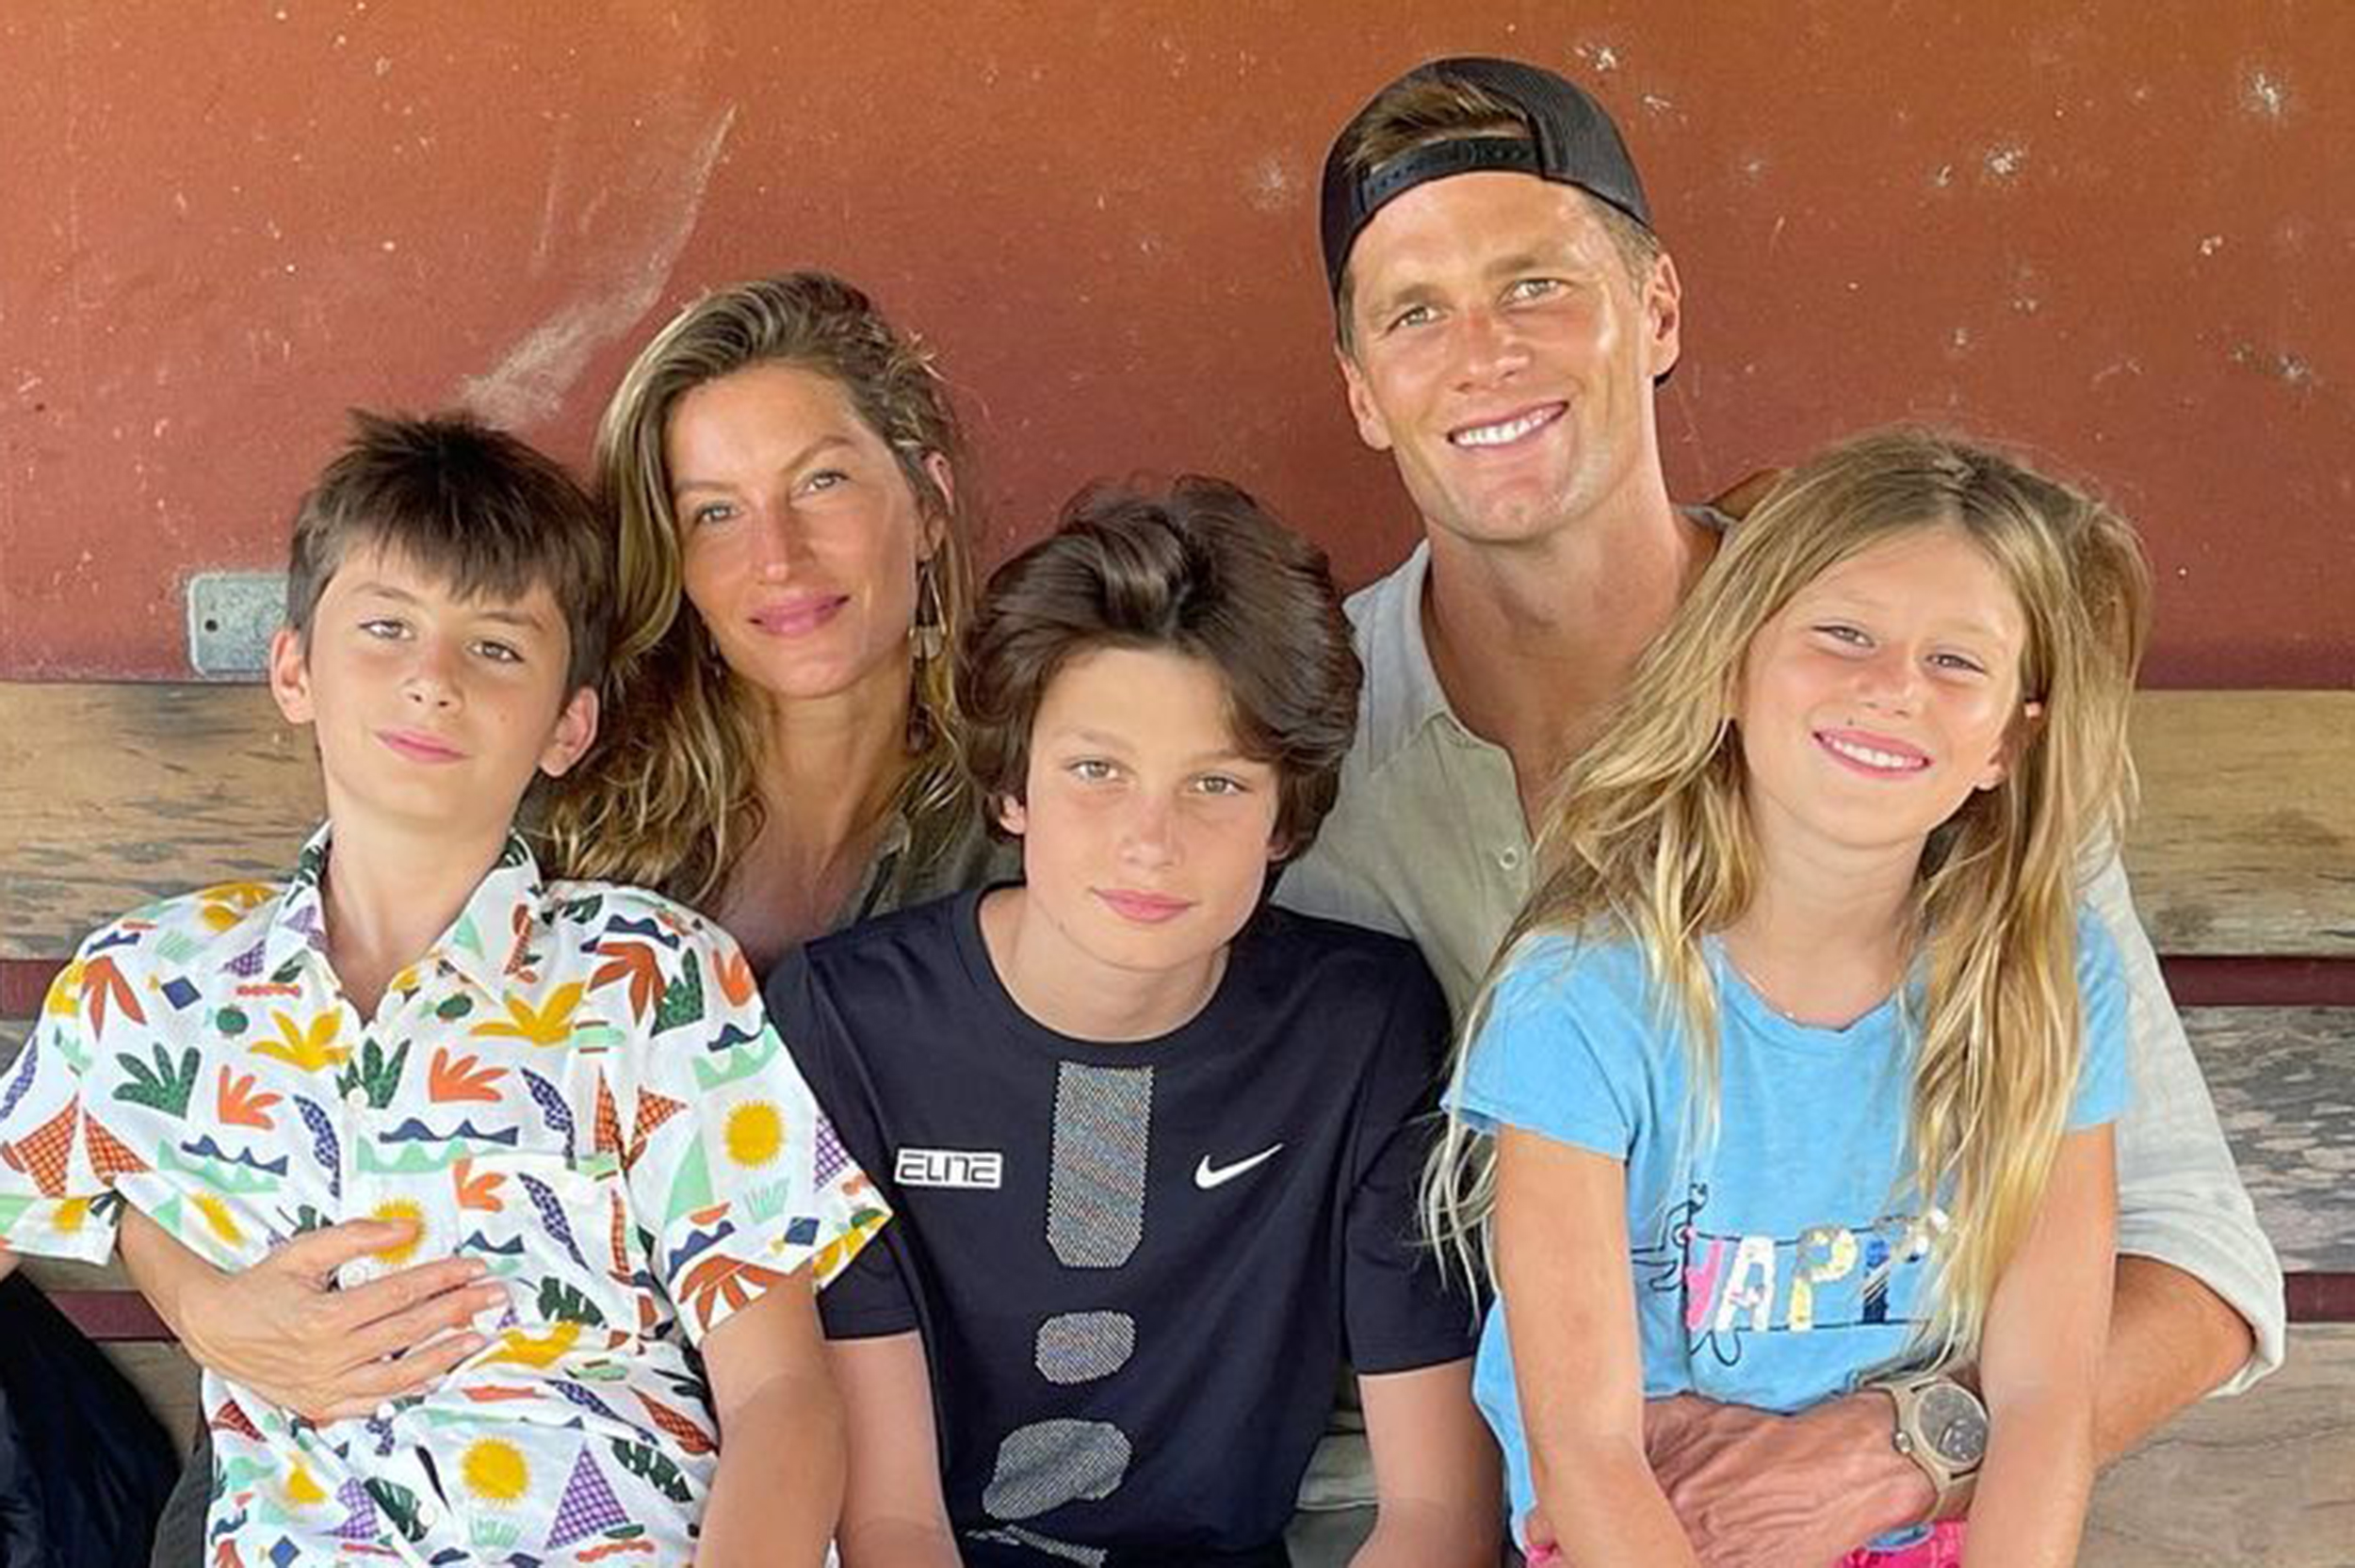 Tom Brady and Gisele Bundchen with their kids